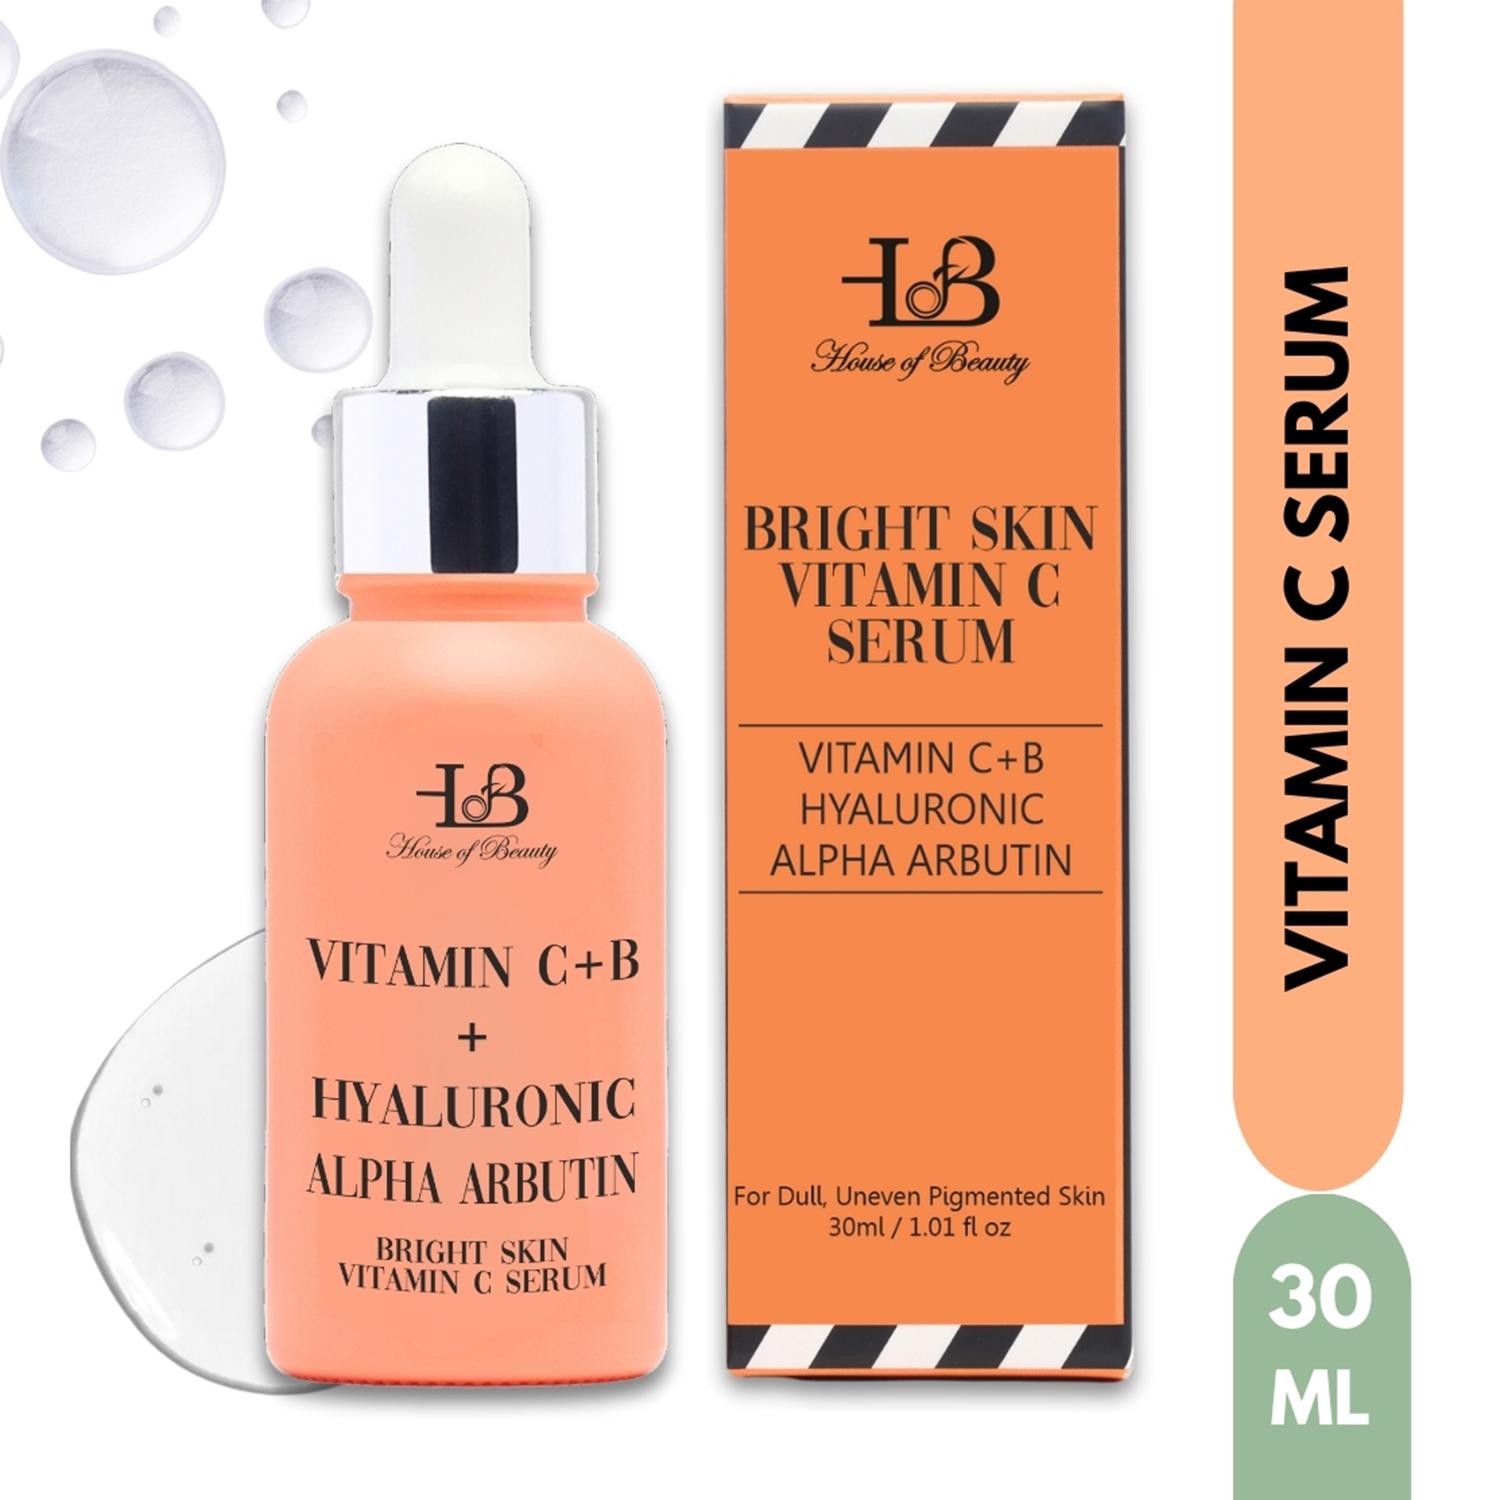 House of Beauty Bright Skin Vitamin C Serum (30ml)